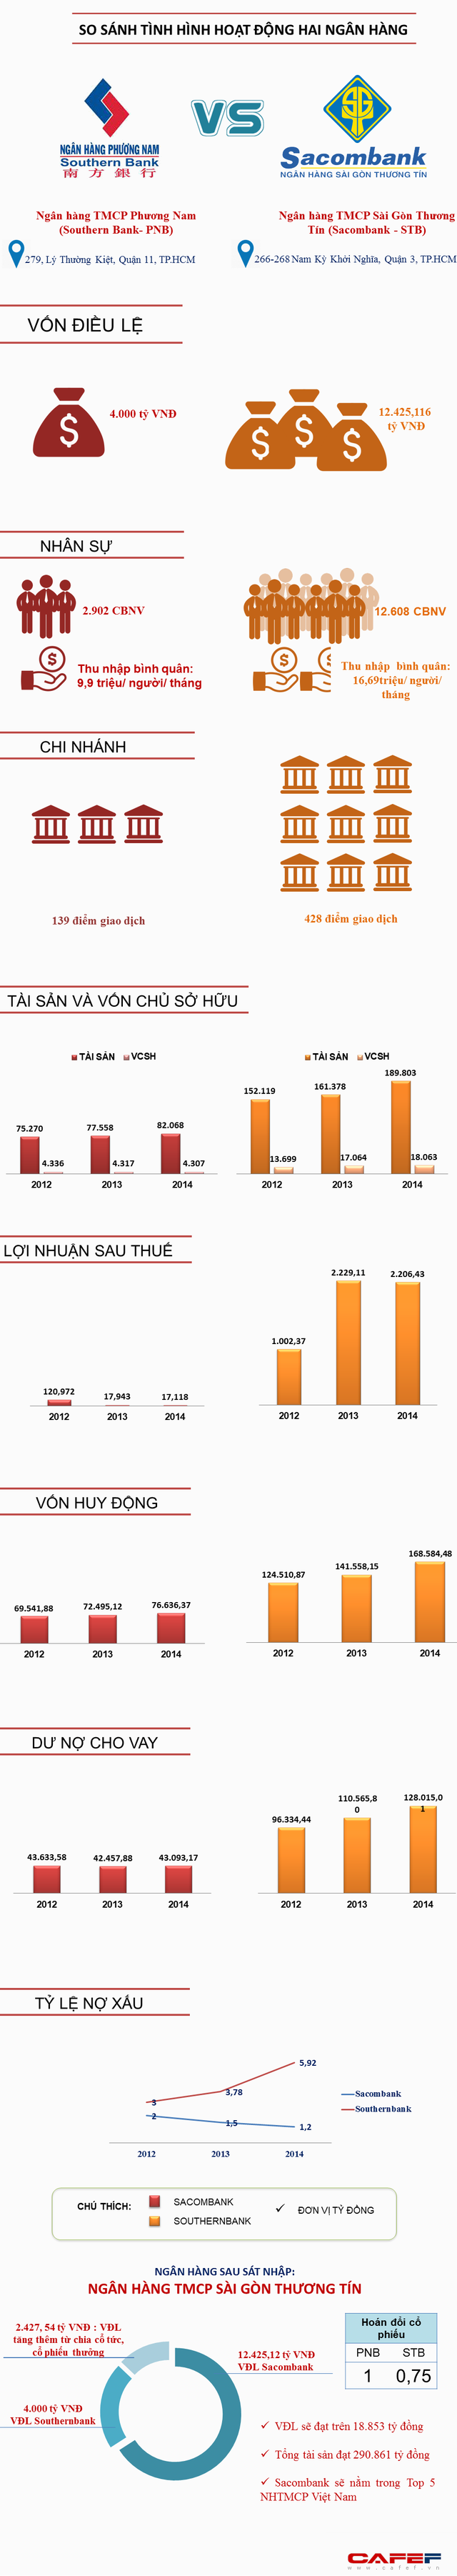 [Infographic] Hoạt động của Sacombank và Southern Bank trước ngày sáp nhập (1)